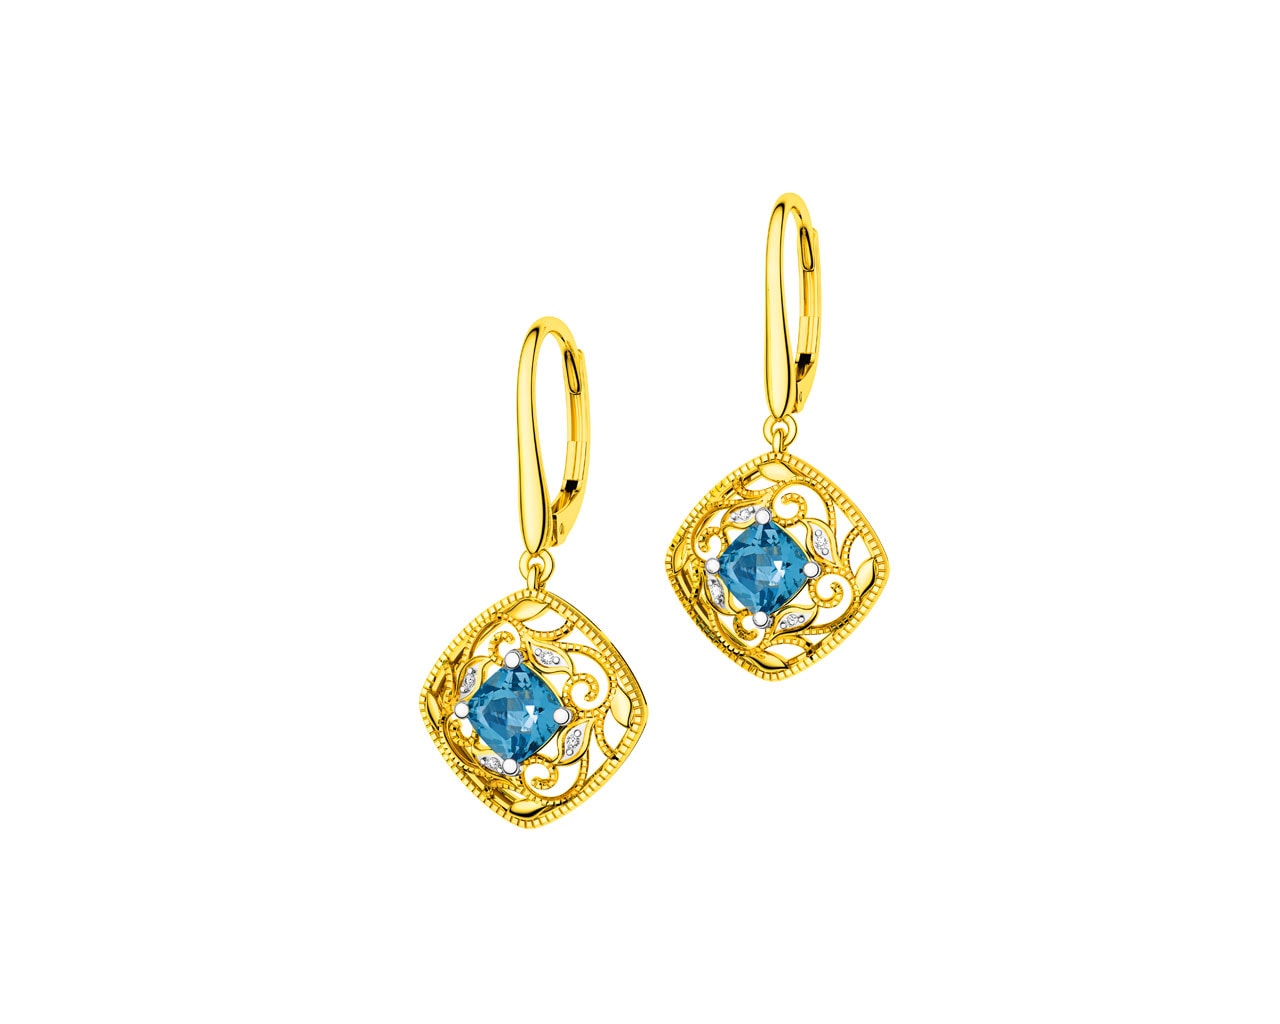 Zlaté náušnice s diamanty a topazy (London Blue)  0,02 ct - ryzost 585